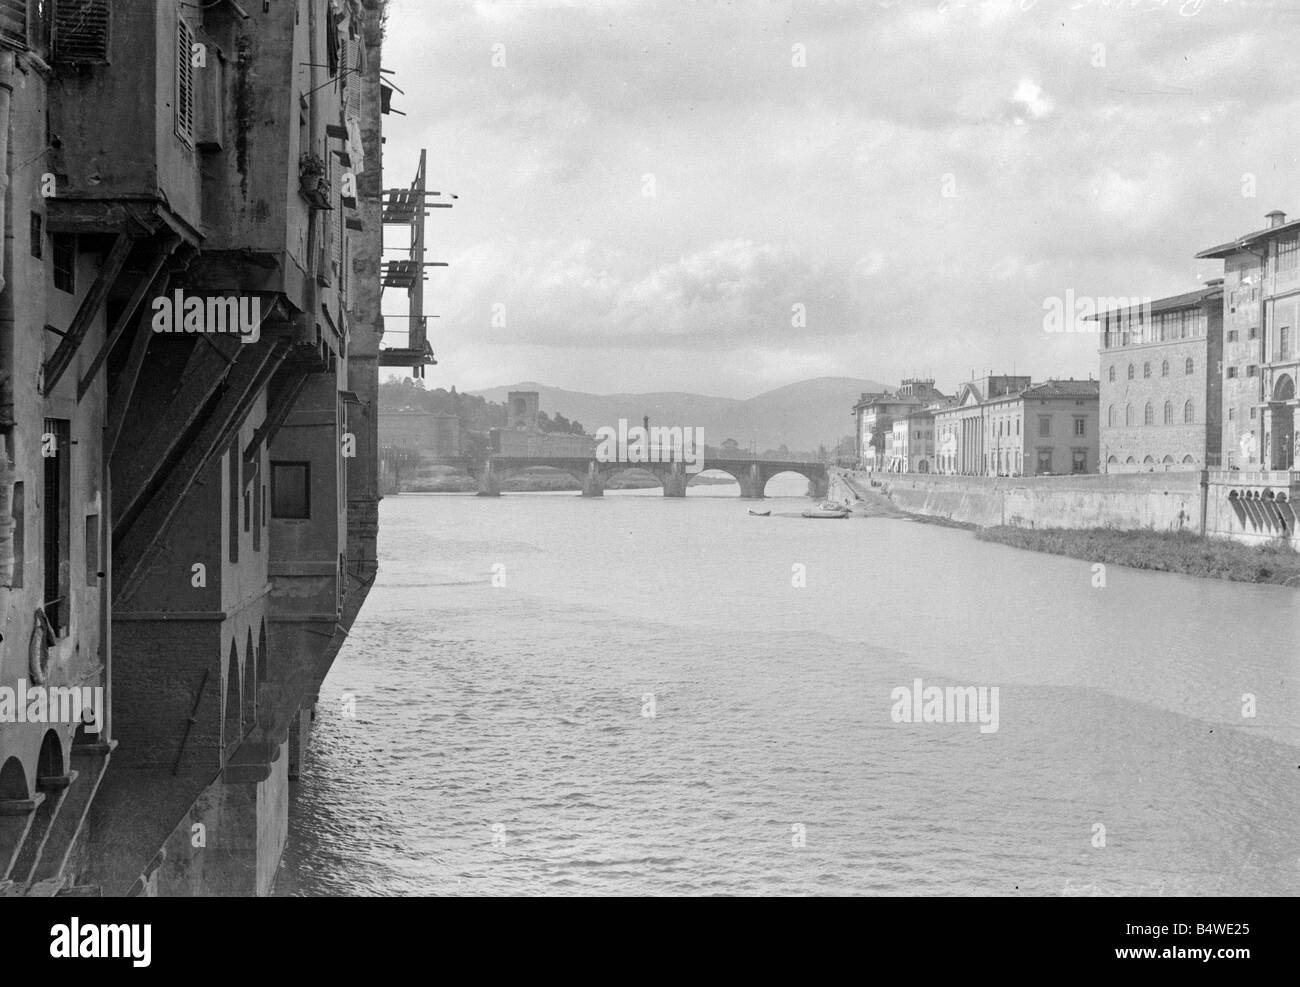 Der Fluss Arno gesehen hier, wie es der norditalienischen Stadt Florenz Architektur Brücke Wasser Fluss Italiens Circa 1925 1920s Mirrorpix Tom Grant fließt Stockfoto